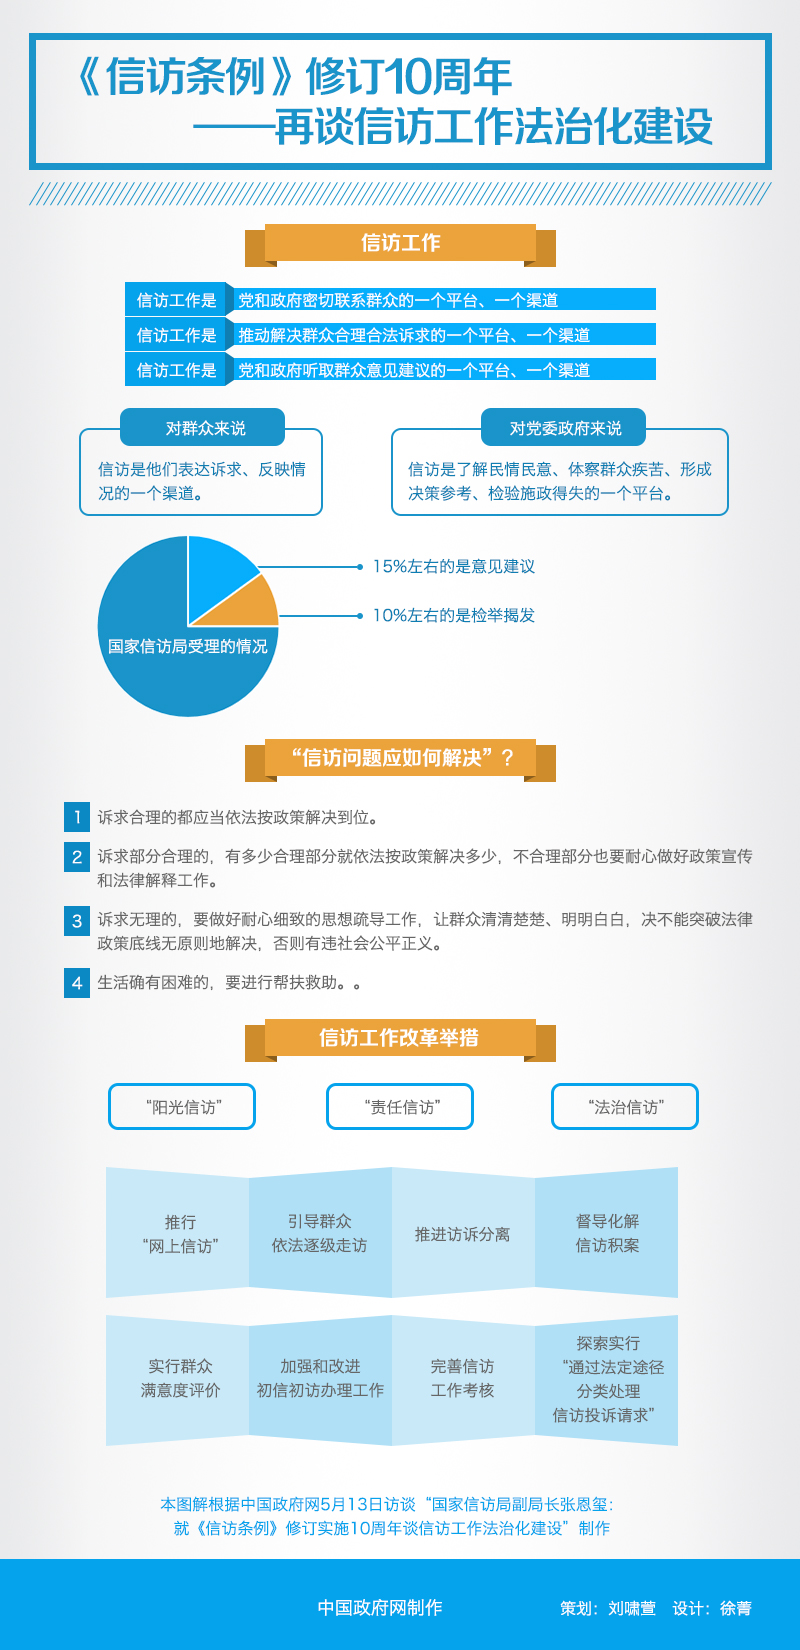 图解:《信访条例》修订10周年_中国发展门户网